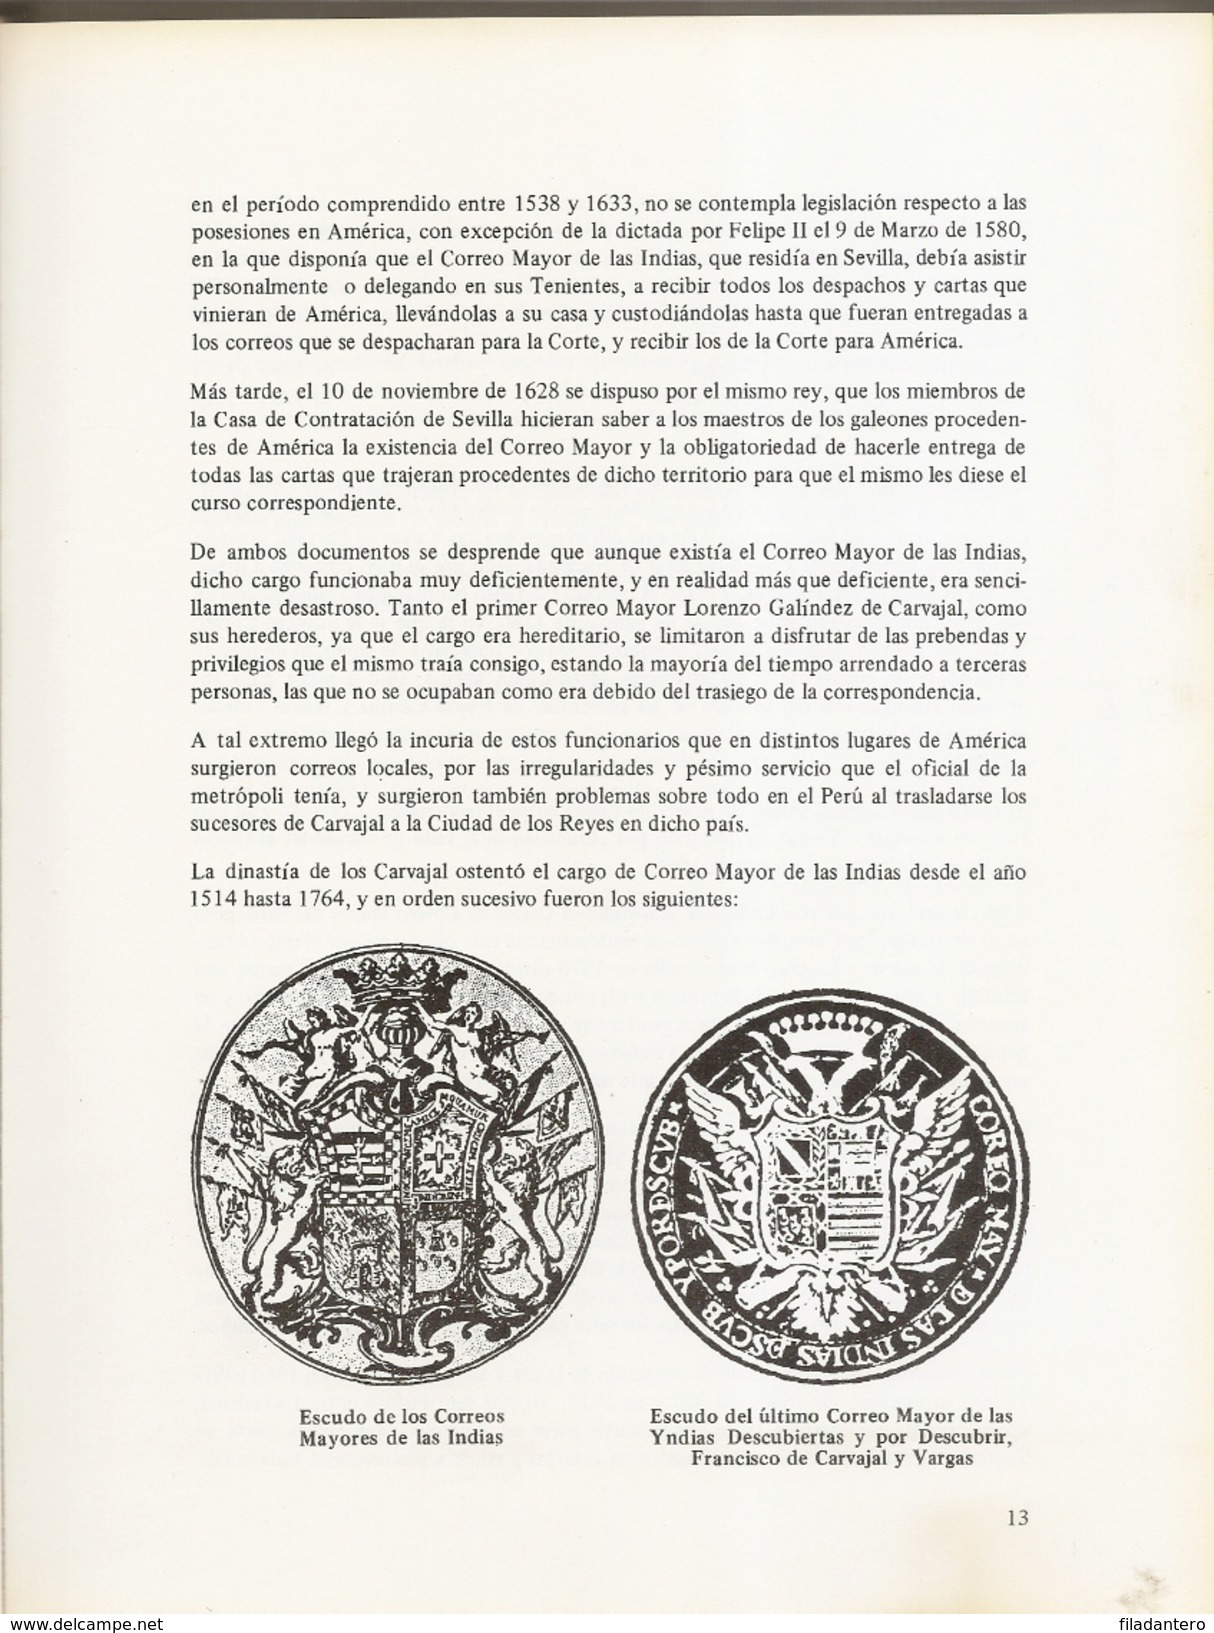 Historia Postal De Cuba  Tirada 1000 Ejemplares JL Guerra Aguilar  1983 - Filatelia E Historia De Correos